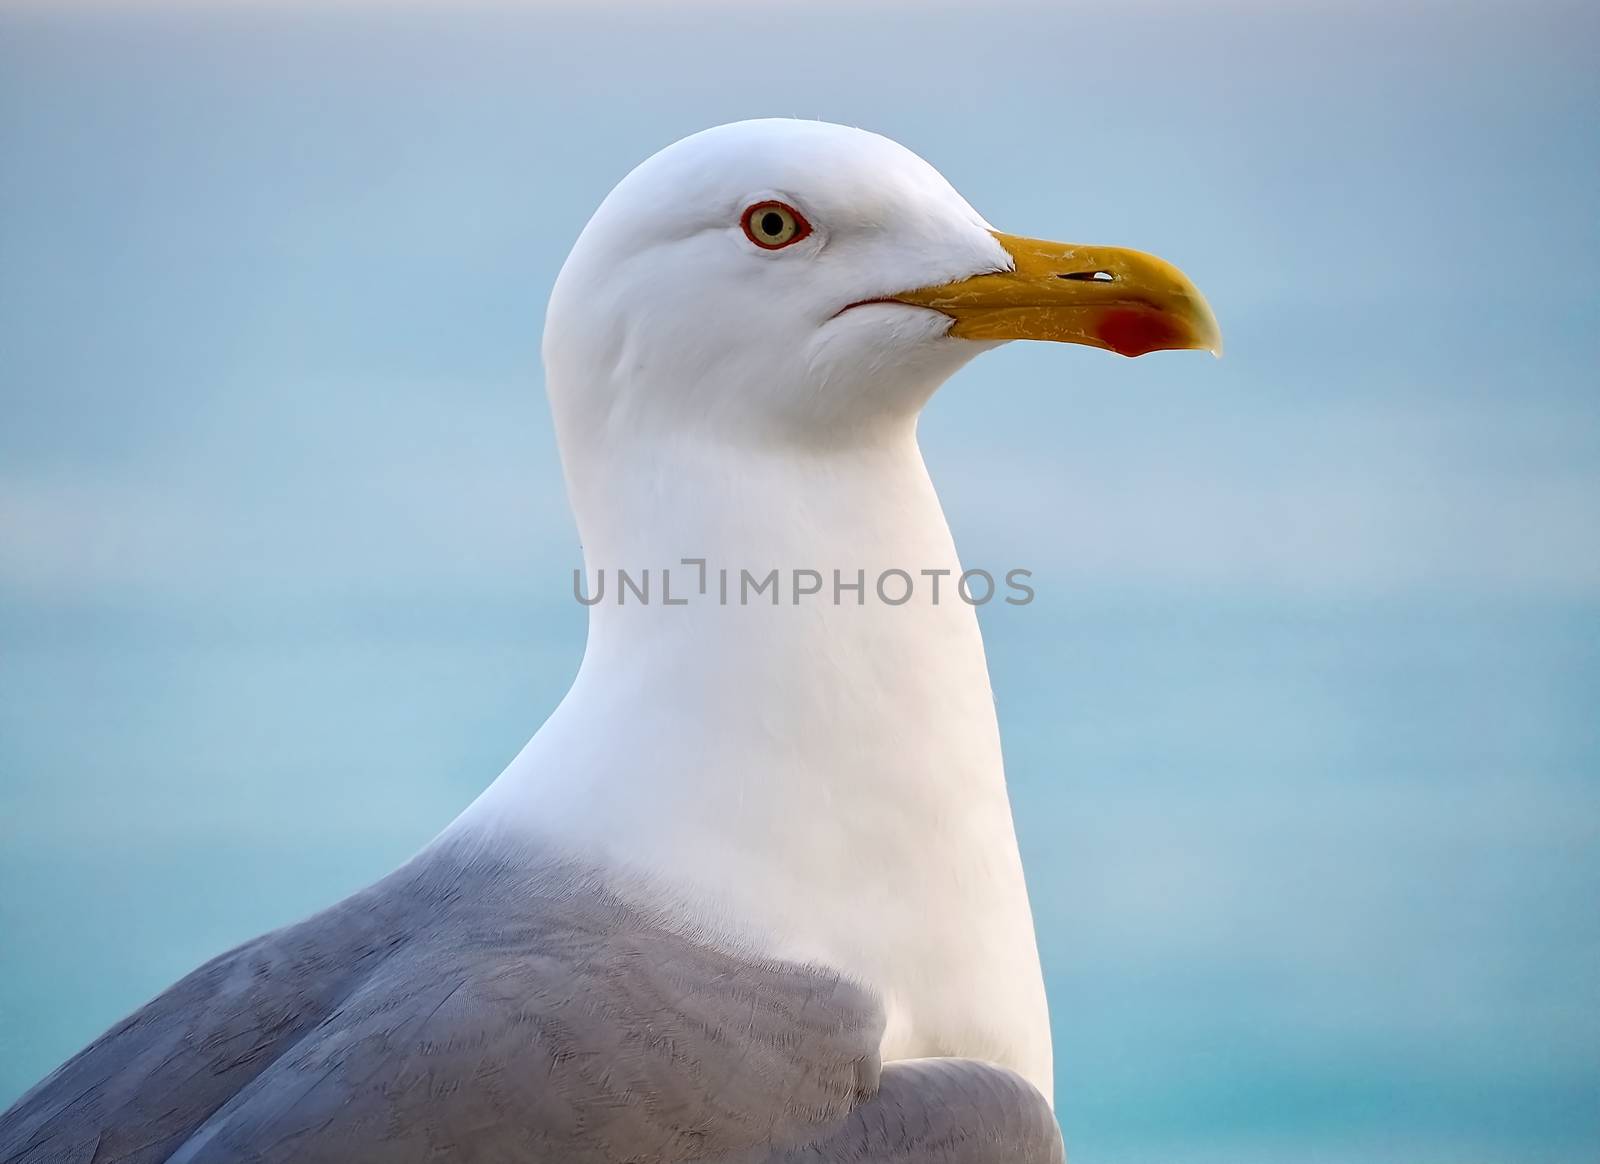 Fun with seagulls-portrait at the beach by Stimmungsbilder